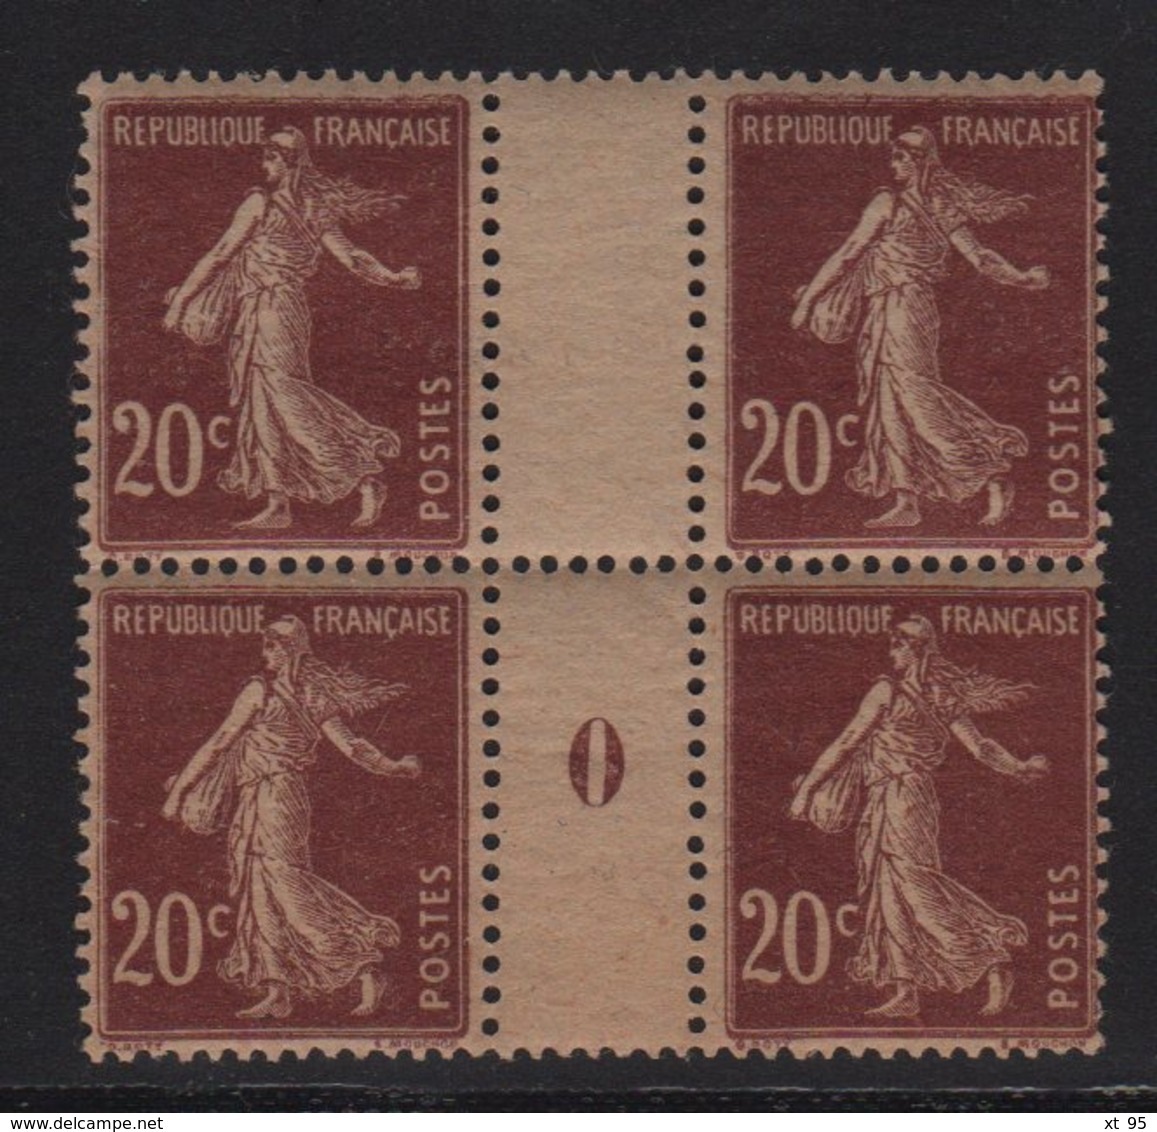 Type Semeuse - N°139 20c Brun Rouge - Millésime 0 De 1920 - Papier GC - ** Neuf Sanss Charniere - Cote +60€ - Millesimes